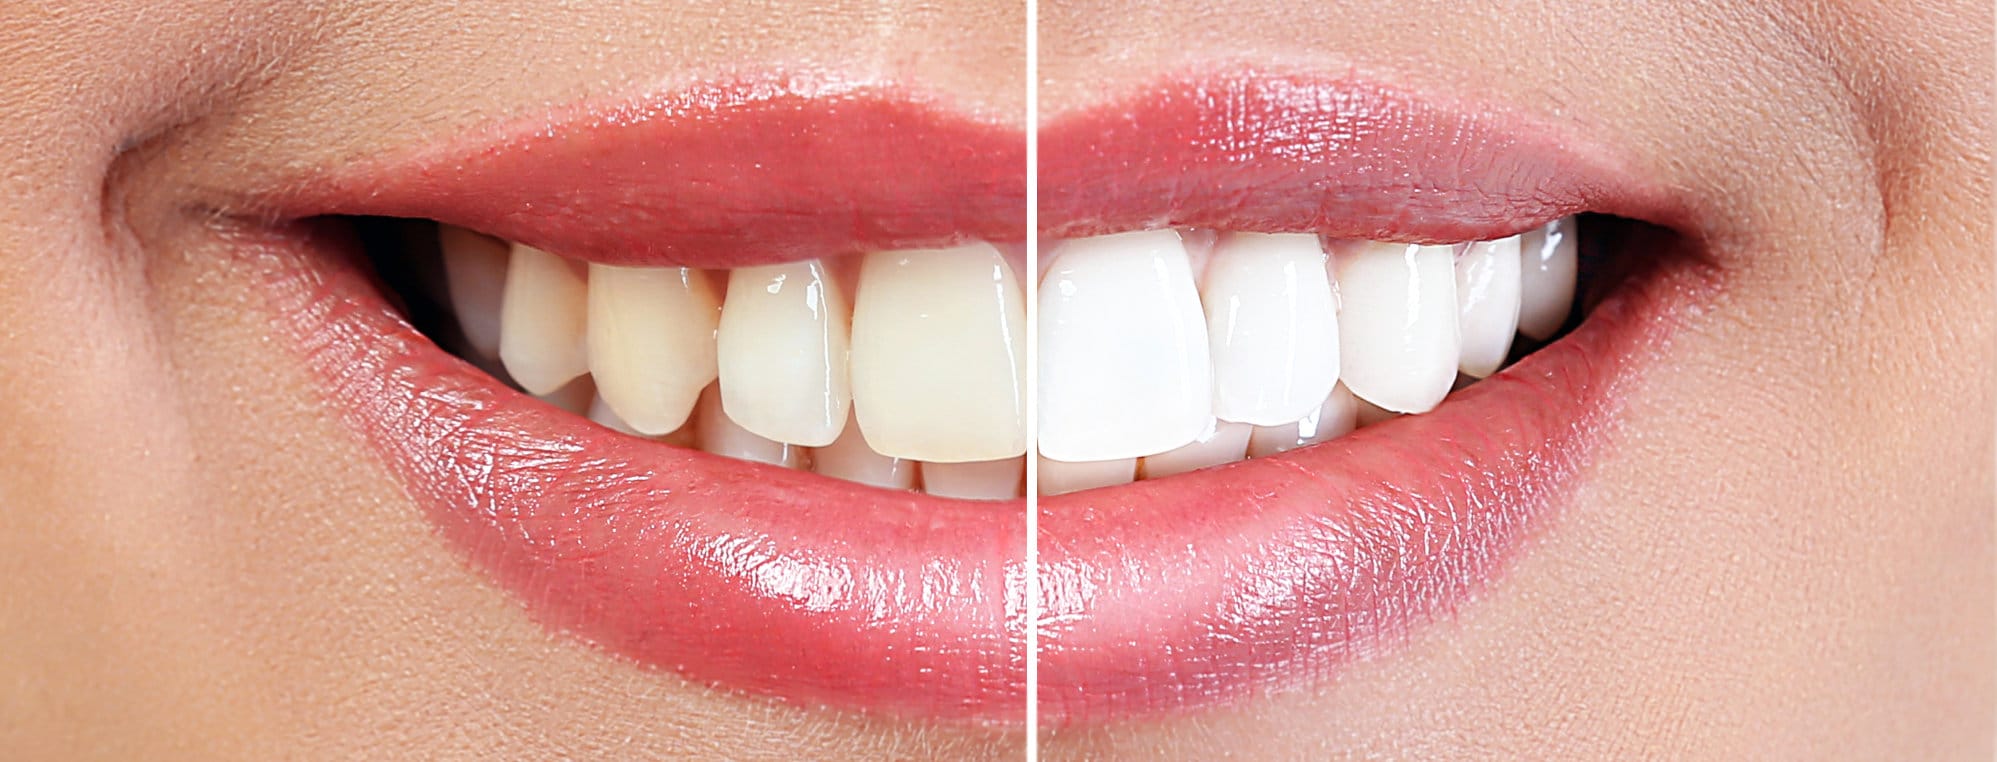 Izbjeljivanje zuba prije - poslije